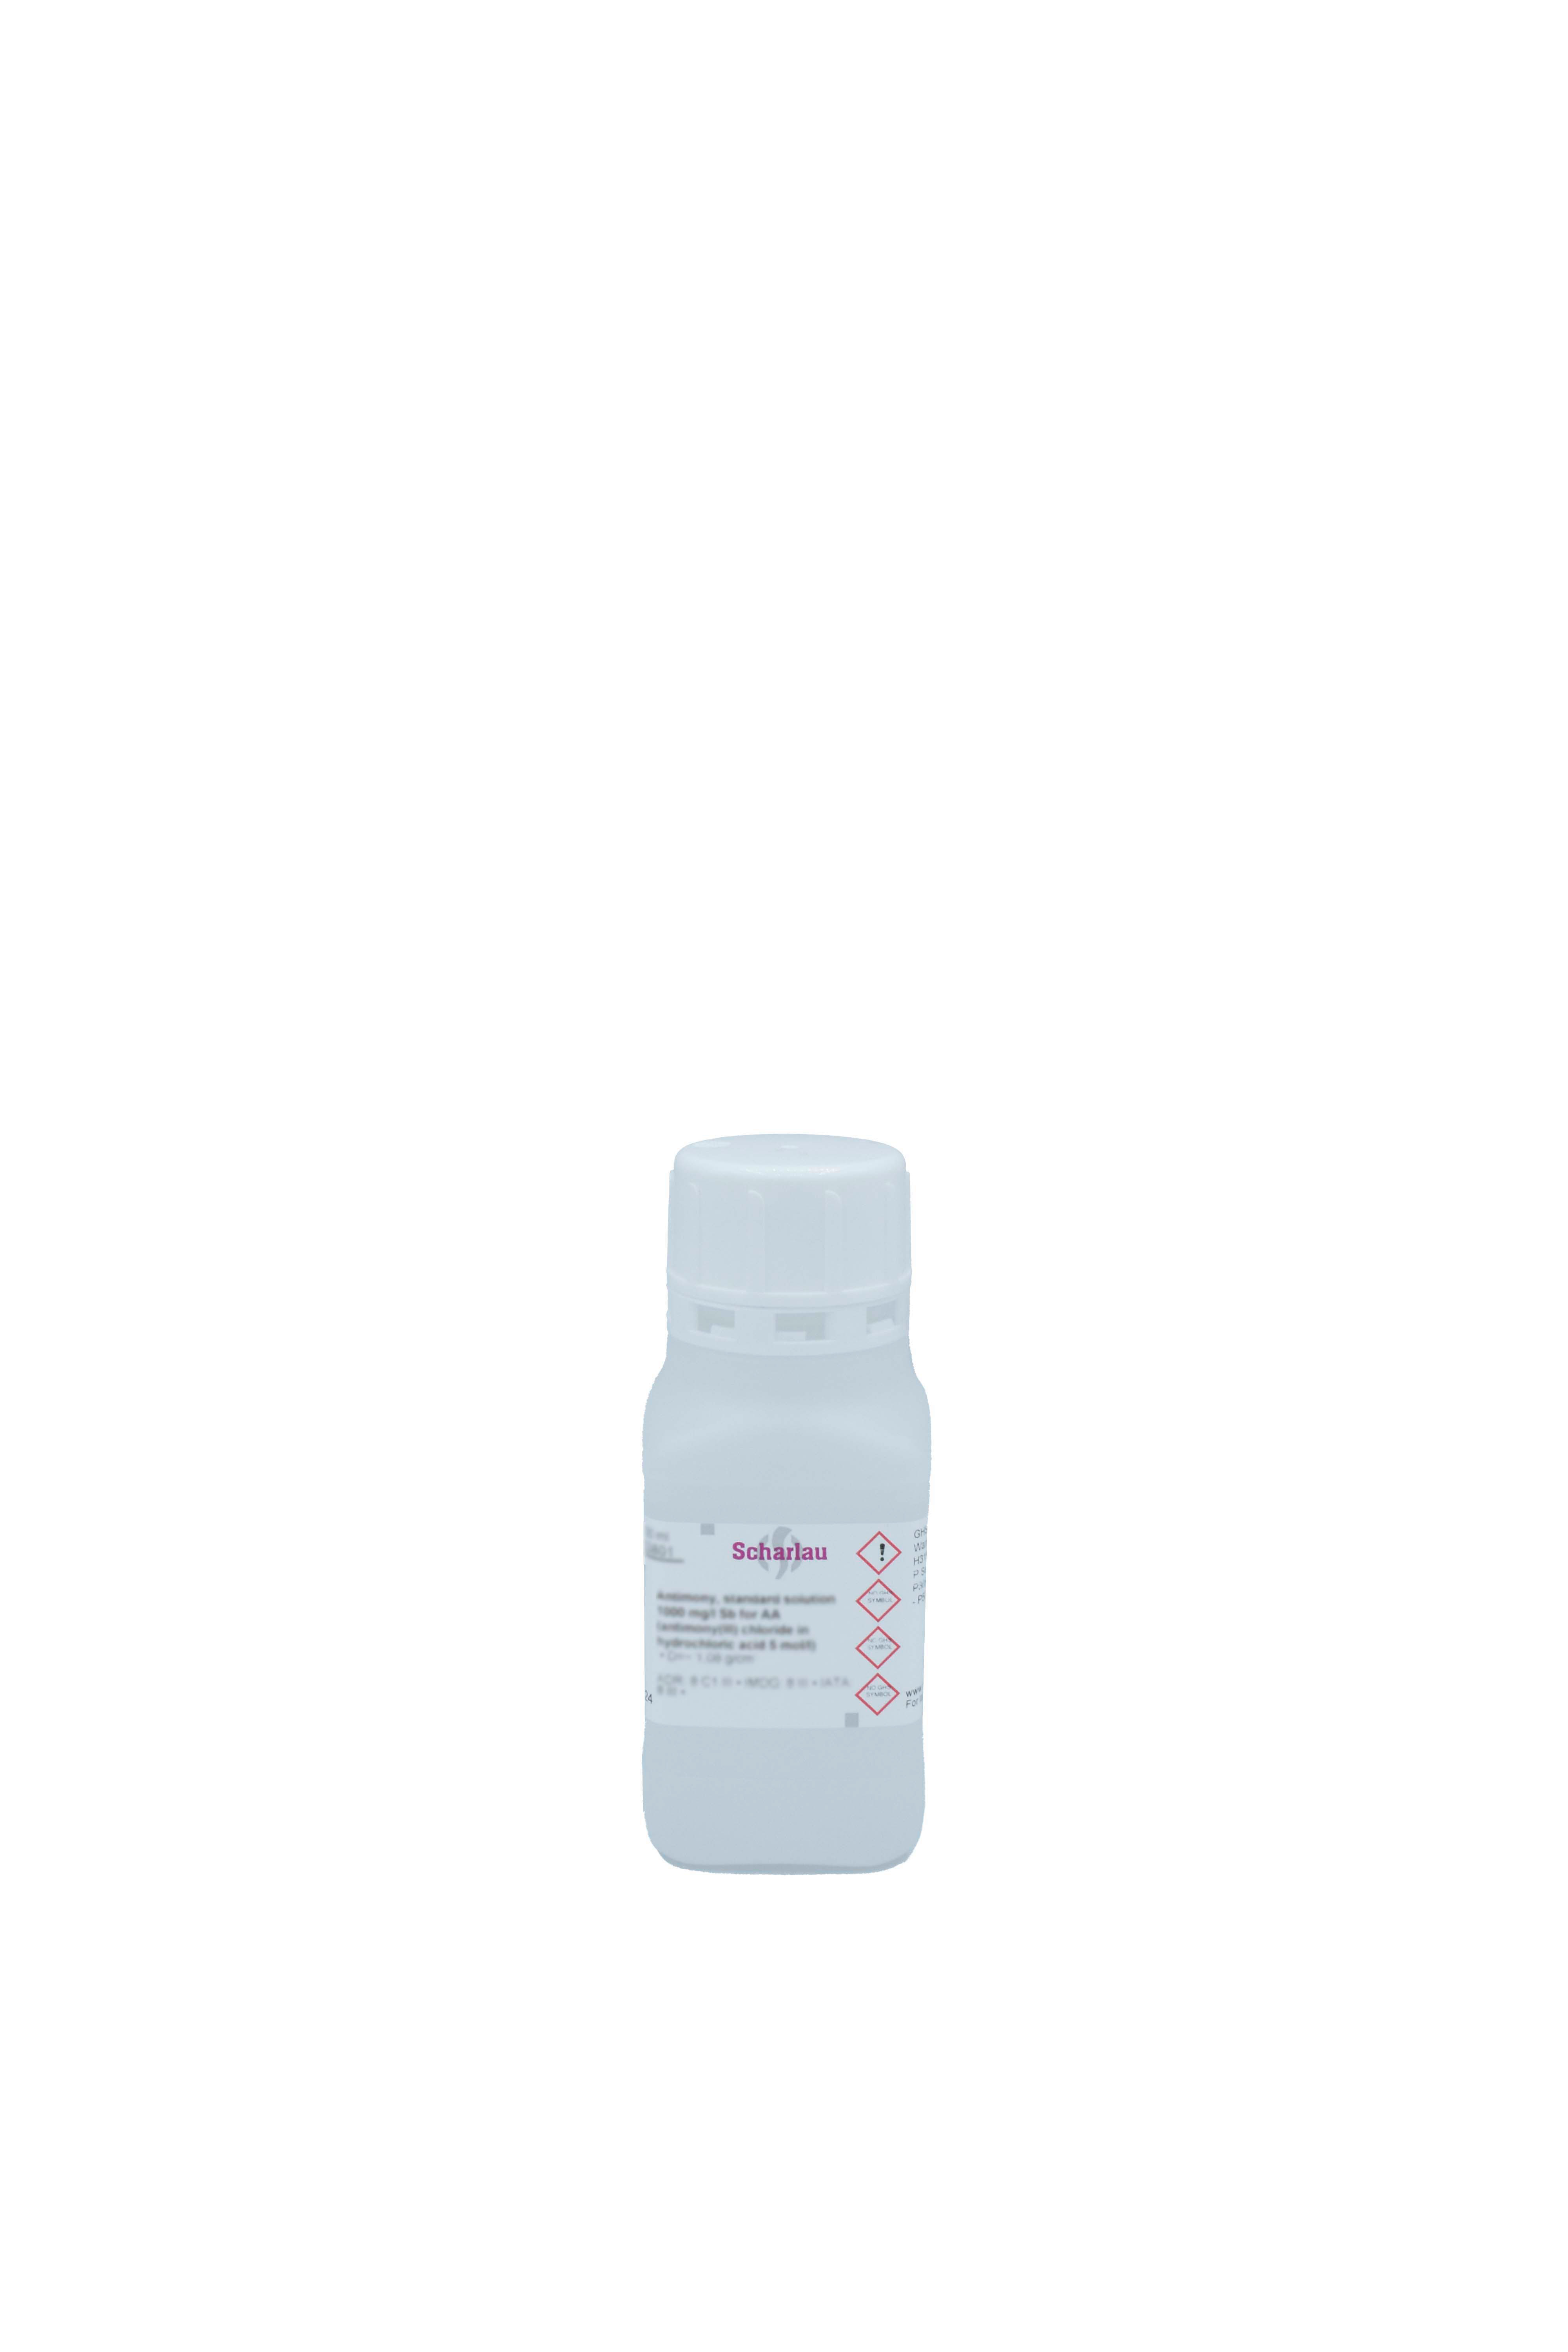 Plata, solución patrón 1000 mg/l Ag para AAs (plata nitrato en ácido nítrico 0,5 mol/l) 